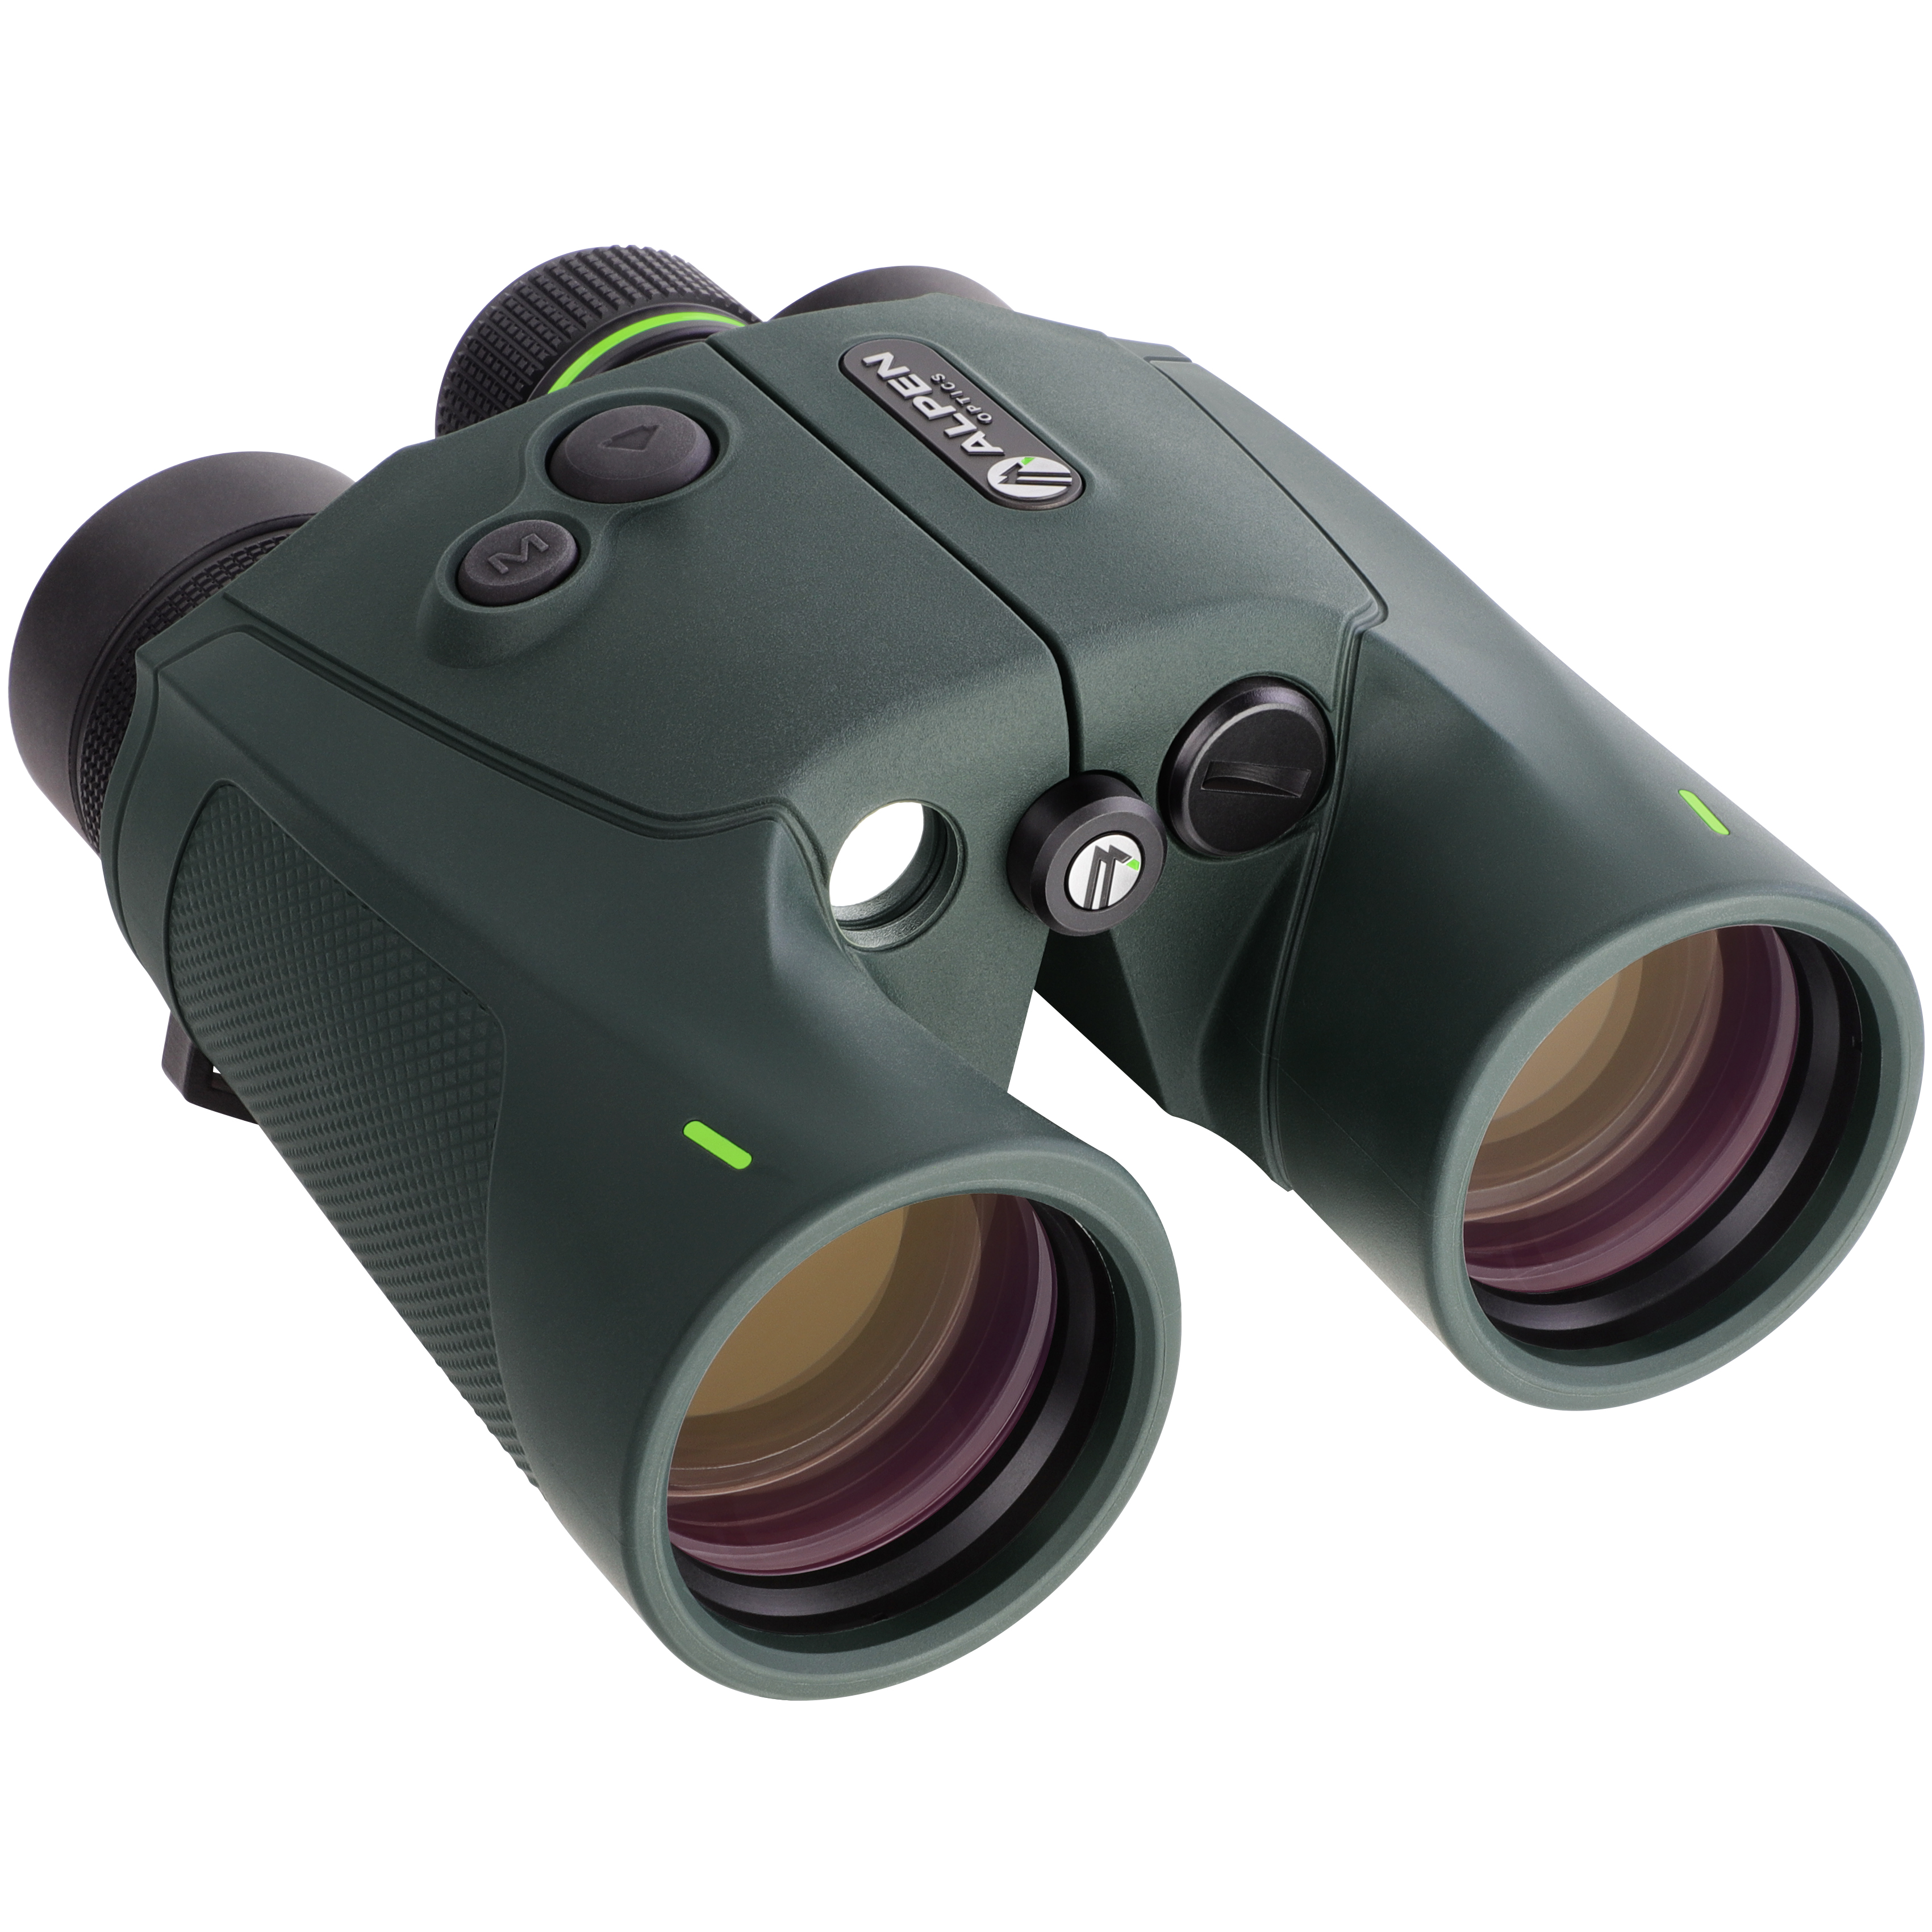 ALPEN OPTICS Apex XP 8x42 LRF Binoculars with Rangefinder